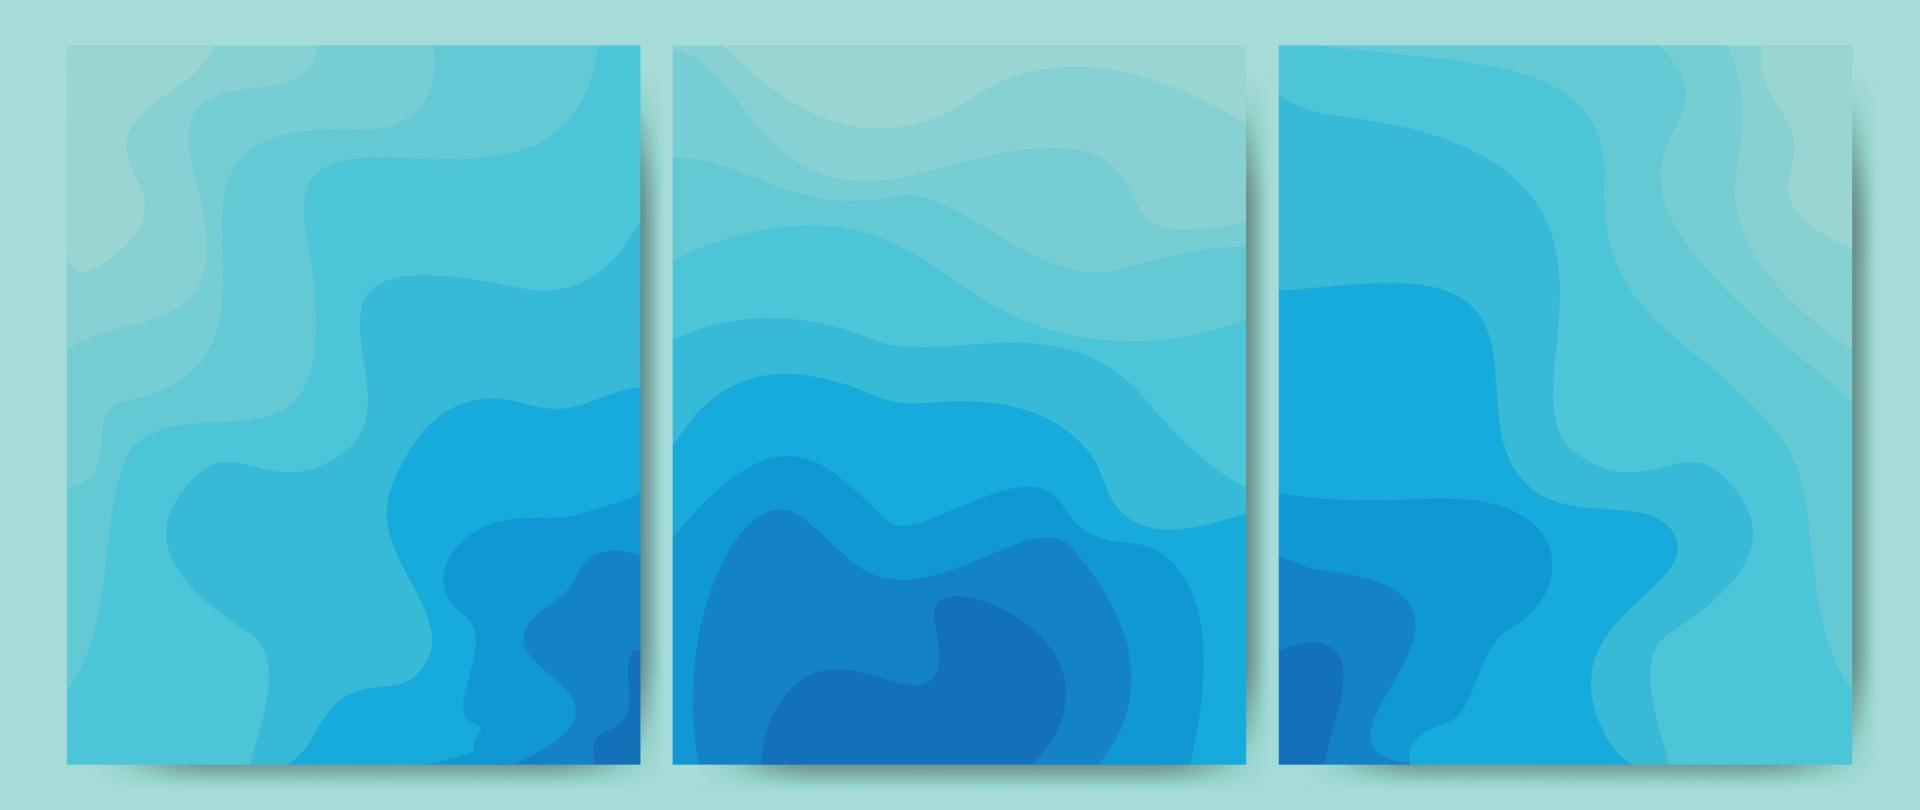 abstrakter Hintergrund von Meereswellen, Meerwasser, Flüssen, Seen. Vorlage Textur Aqua mit einem Muster aus Wellenlinien. ideal für Abdeckungen, Textildrucke, Stoffe, Tapeten. Vektor-Illustration. vektor